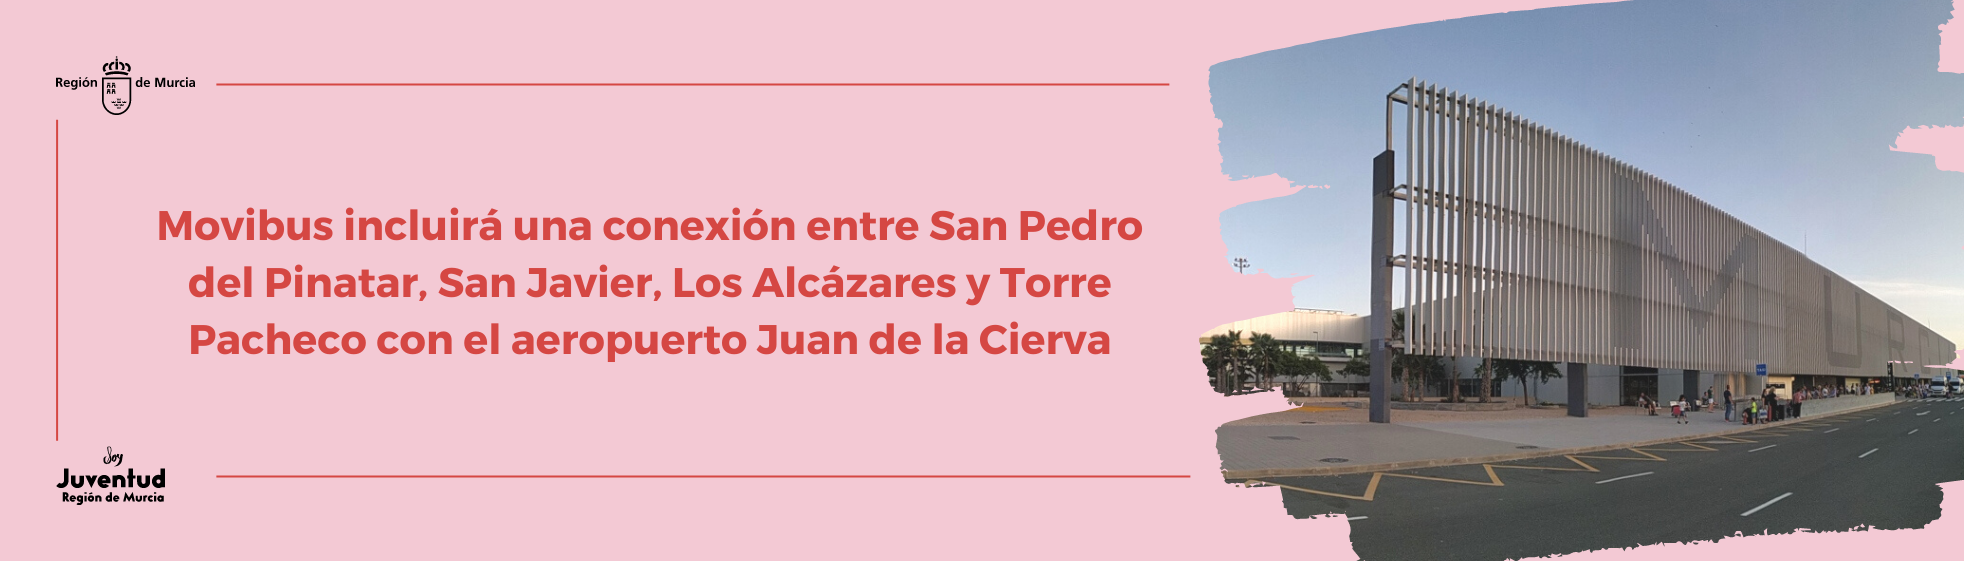 Movibus incluirá una conexión entre San Pedro del Pinatar, San Javier, Los Alcázares y Torre Pacheco con el aeropuerto Juan de la Cierva